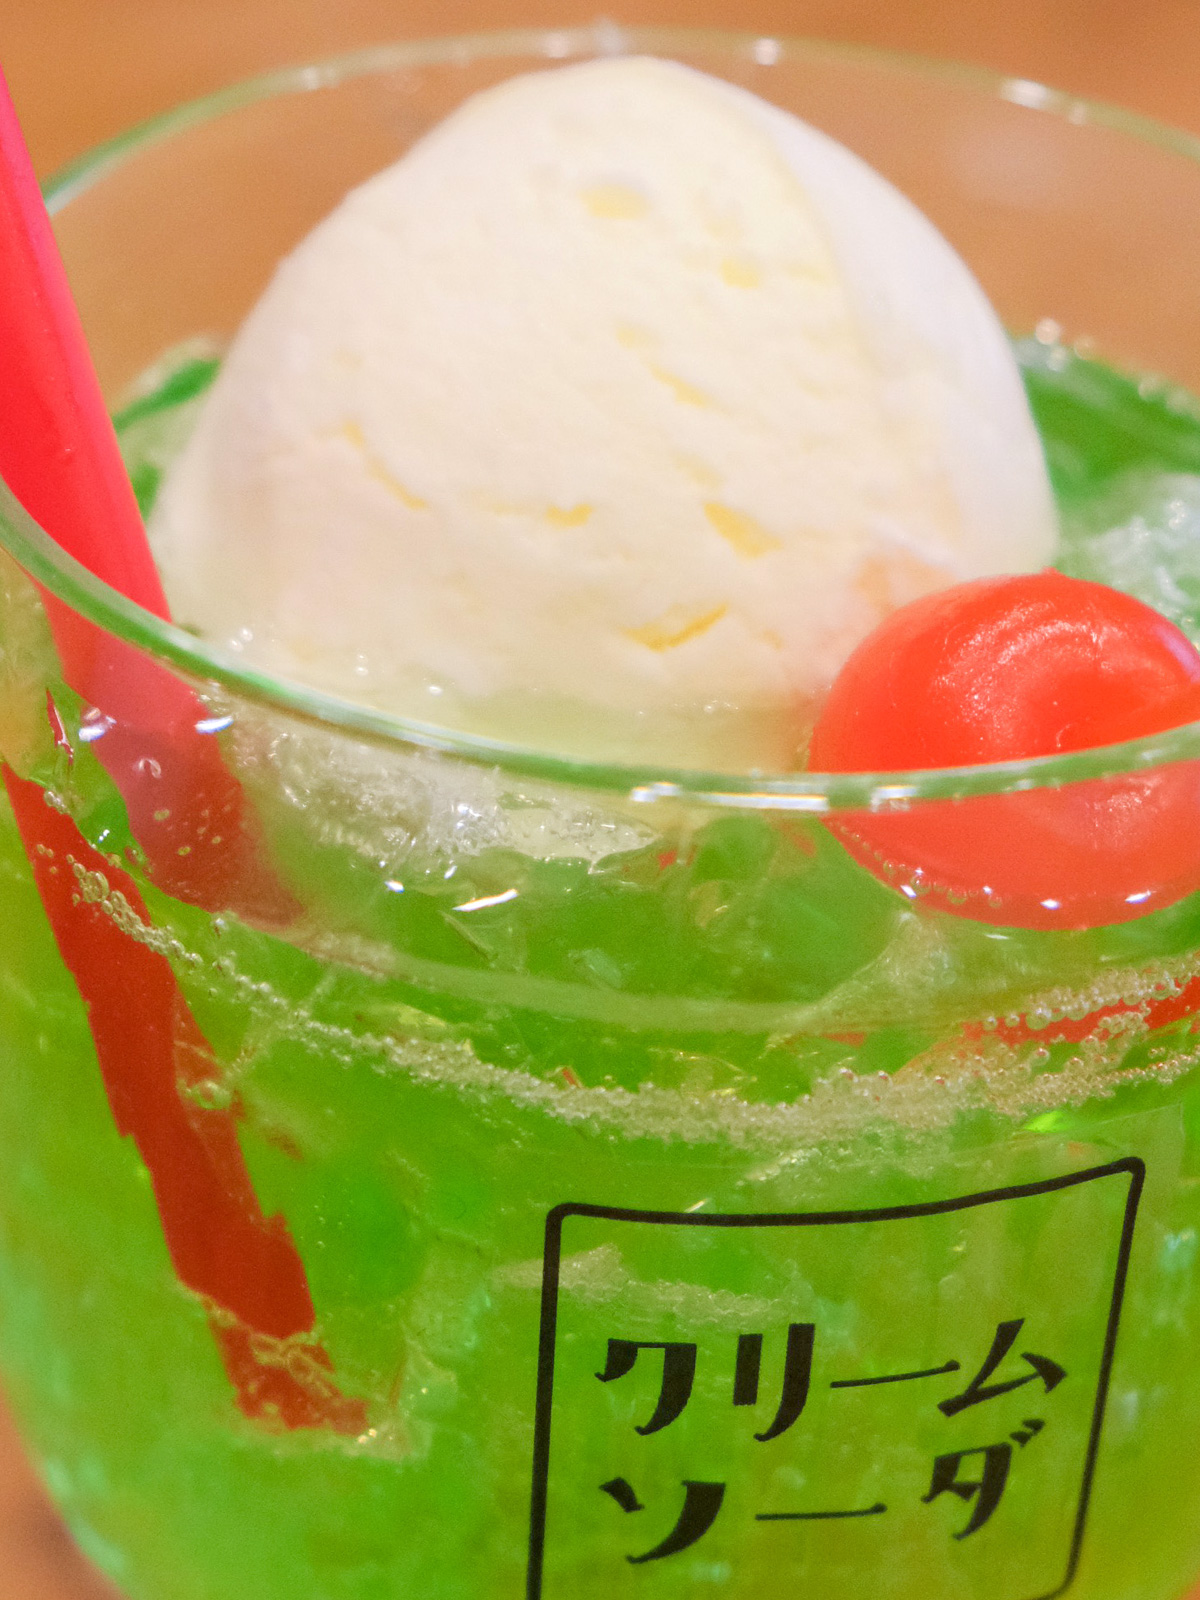 東京ソラマチ食品サンプル製作体験「クリームソーダ」